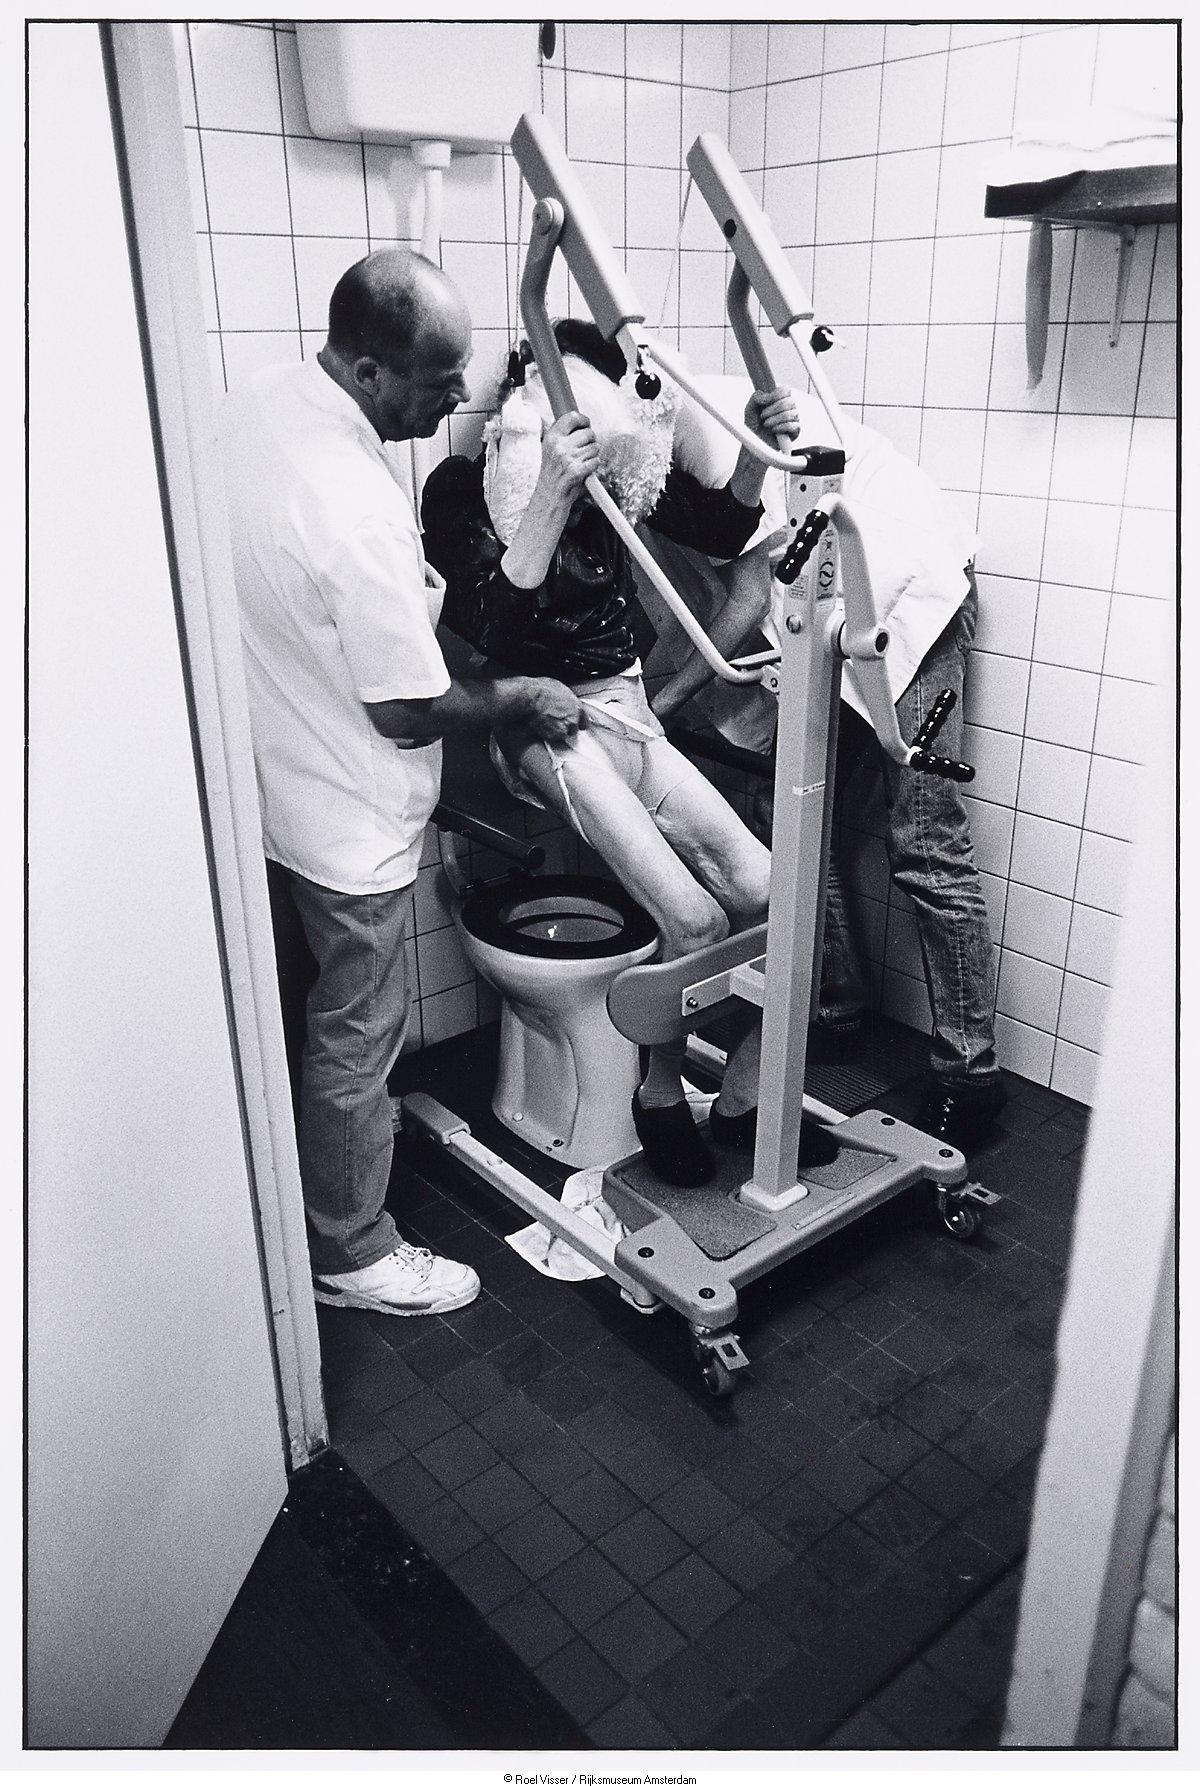 Een geestelijk zieke bejaarde wordt geholpen op het Toilet - Amsterdam